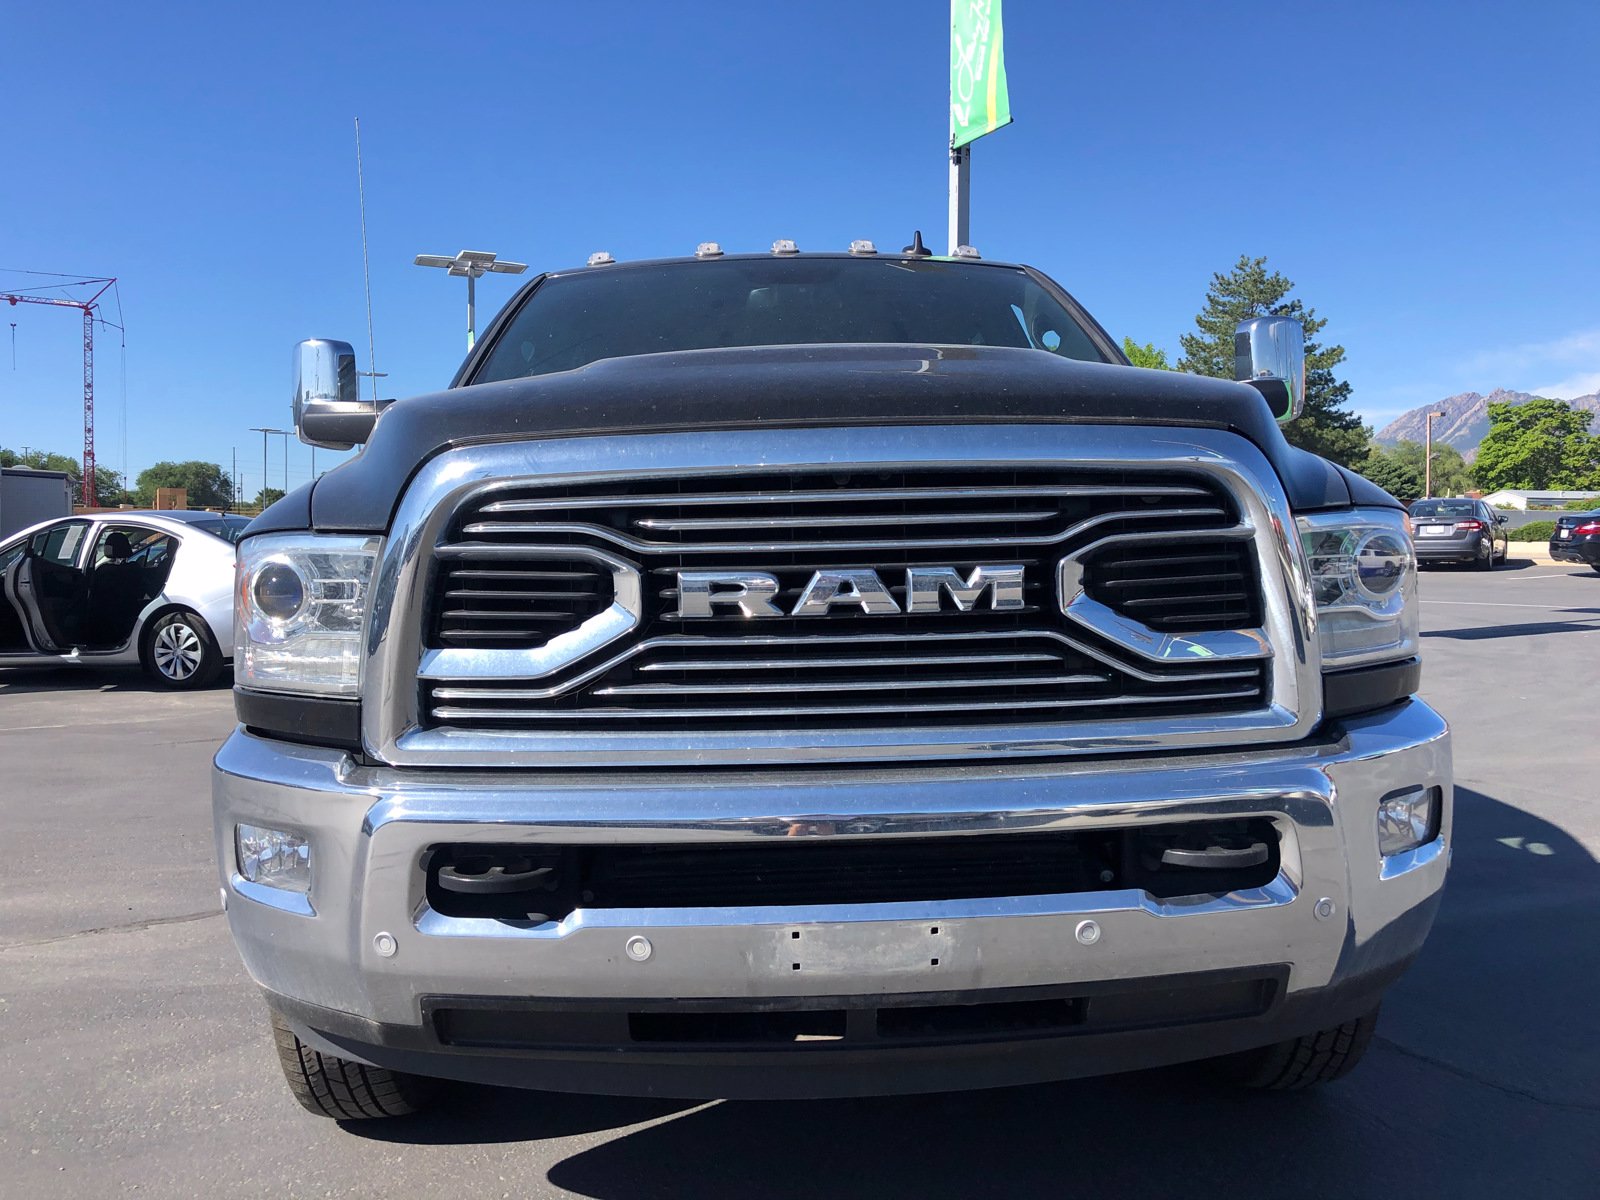 Pre-Owned 2018 Ram 3500 Laramie Longhorn Crew Cab Pickup in Sandy # 2018 Ram 3500 Gooseneck Prep Package